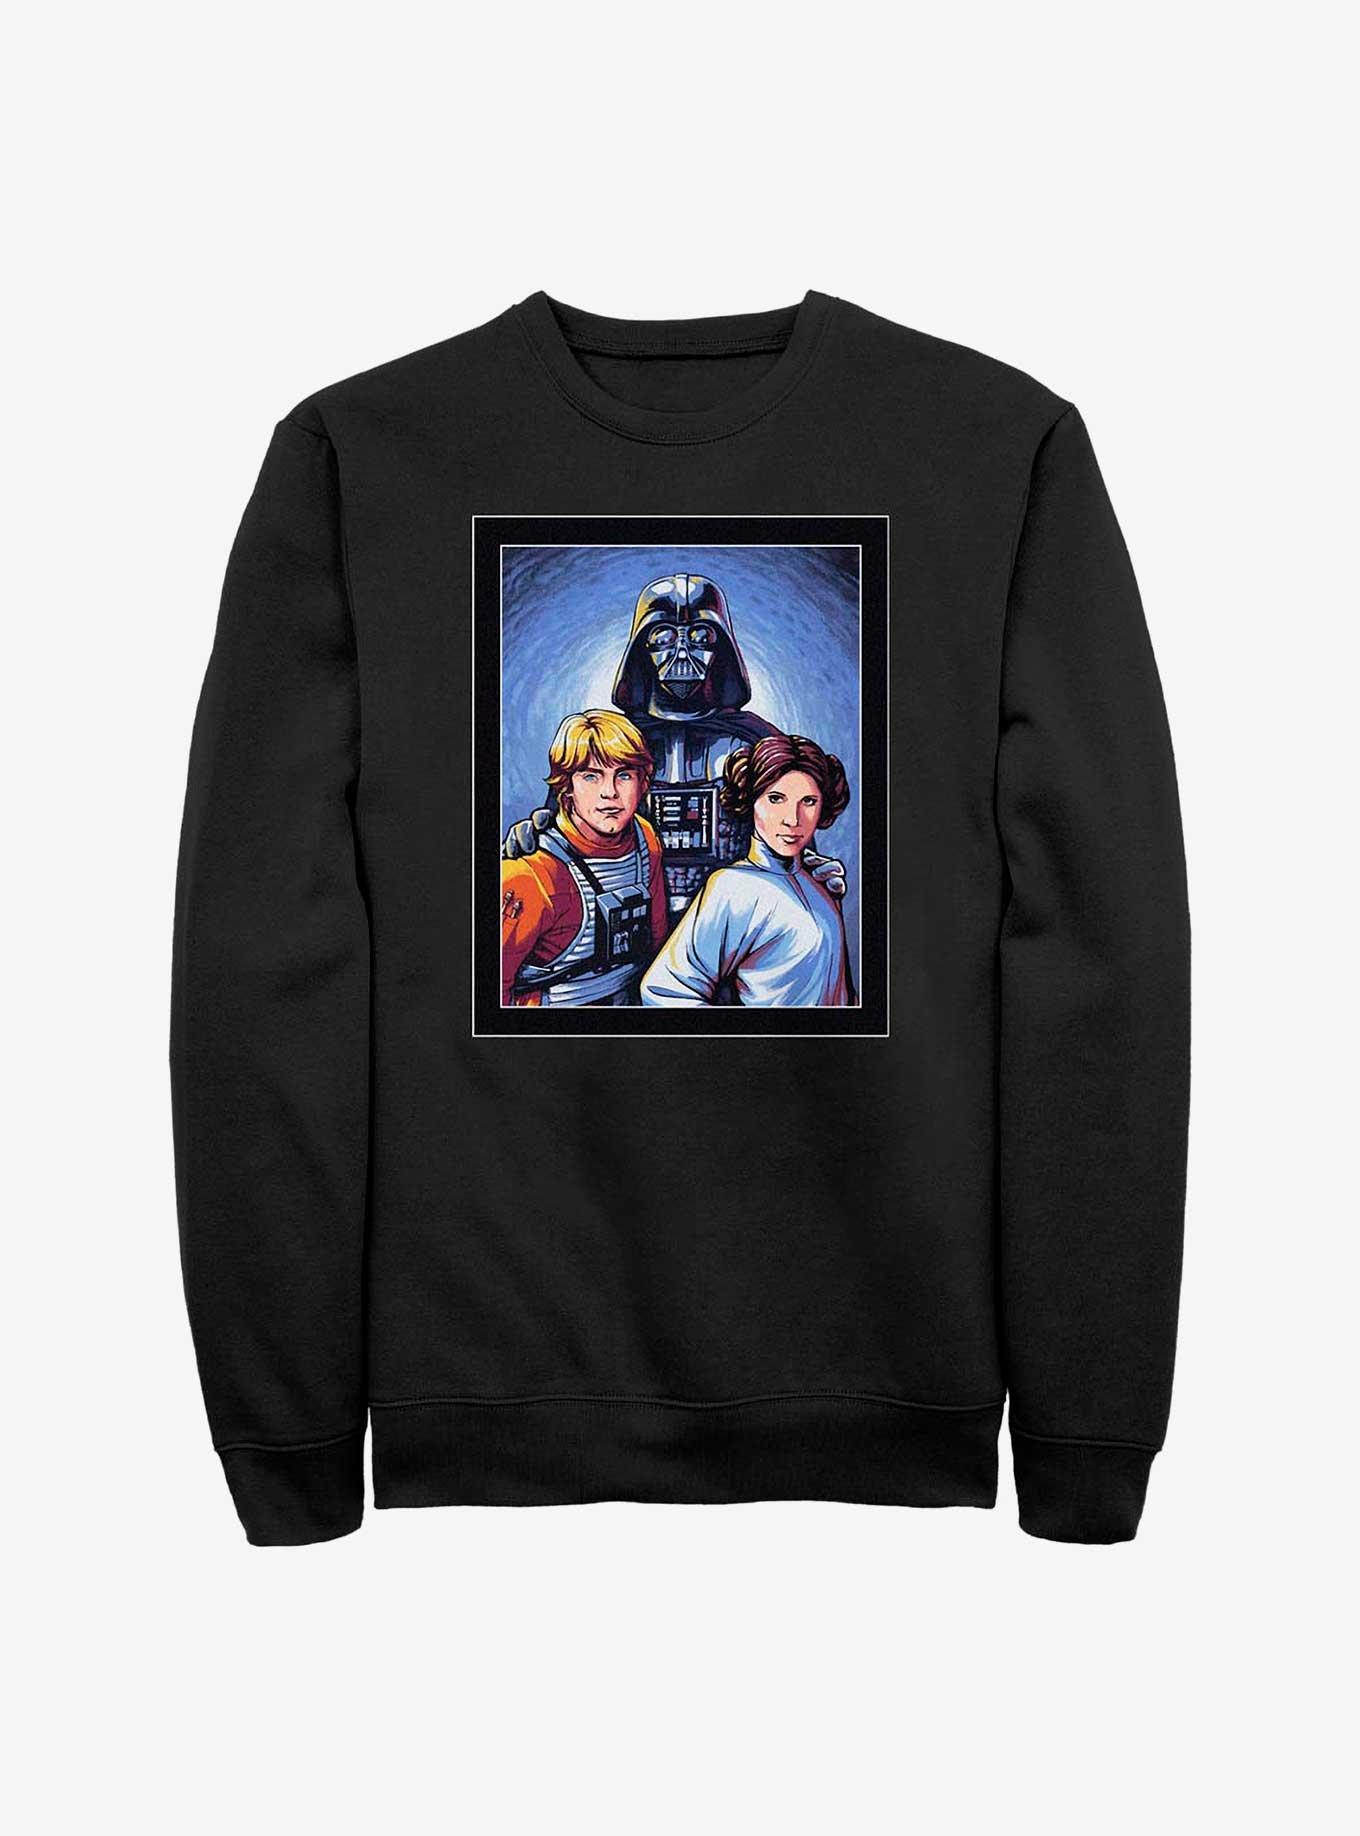 Star Wars Skywalker Family Portrait Sweatshirt